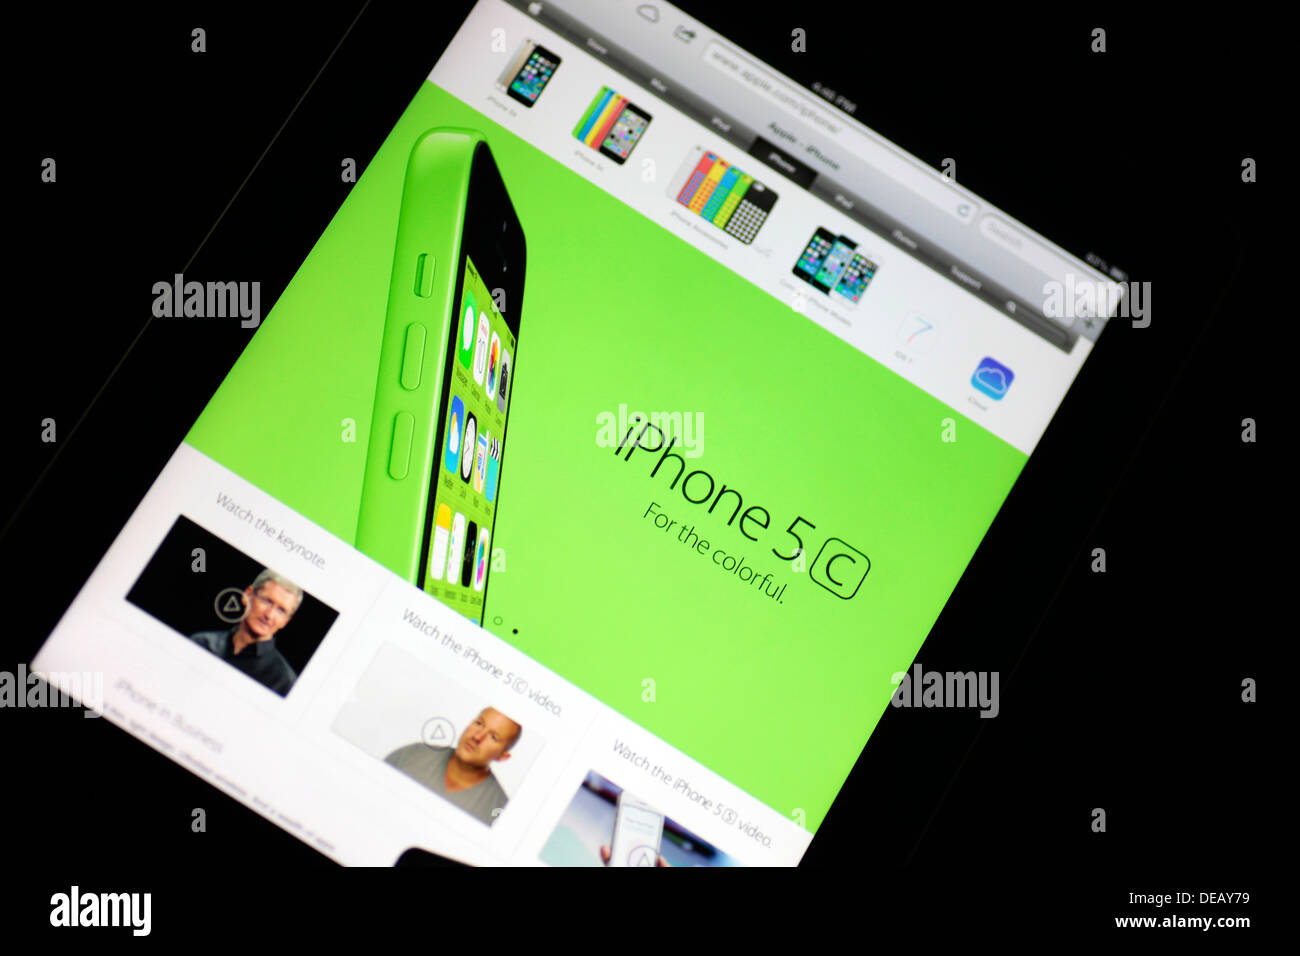 IPhone 5c web-pagina visualizzata in un Apple iPad. Foto Stock